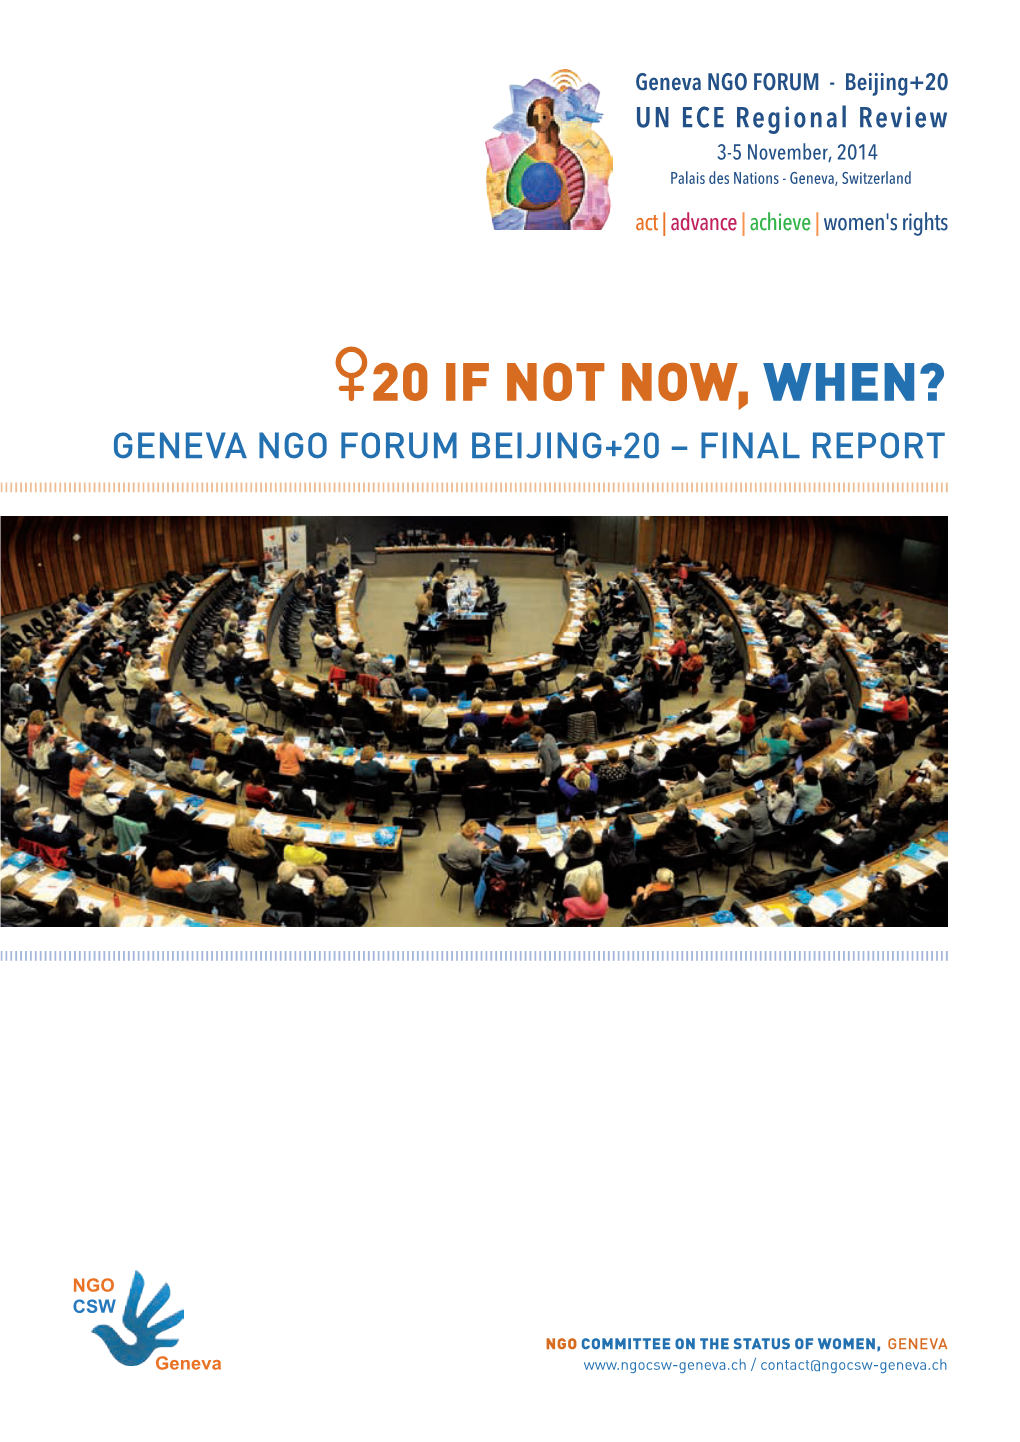 The NGO CSW Geneva B+20